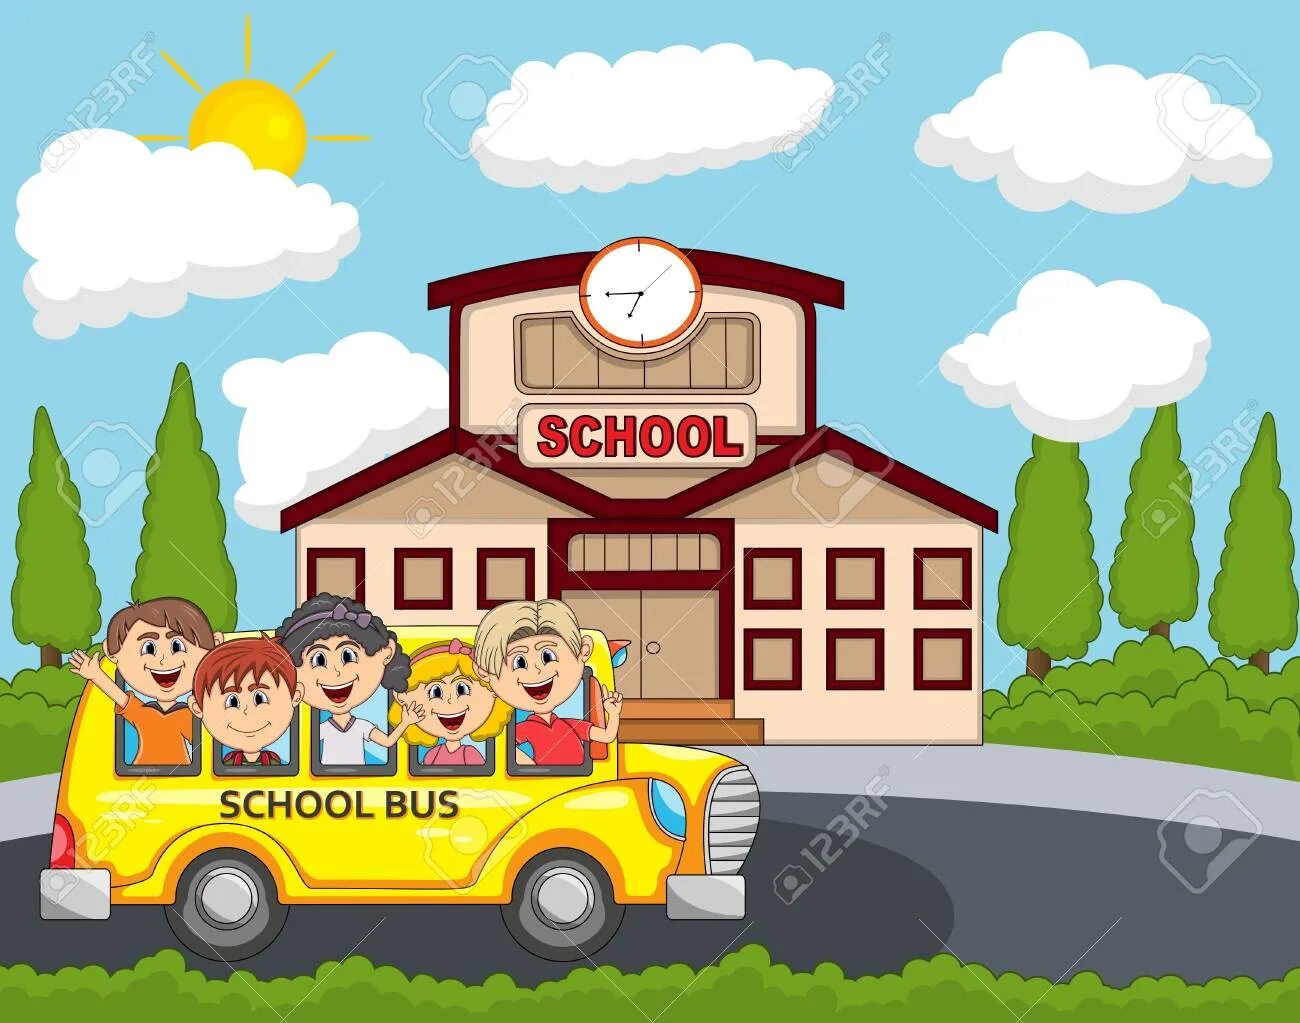 I get i go to school. I go to School by Bus. Go to School by Bus. Шарж на школьный автобус с детьми. Go to School by School Bus картинки для детей.